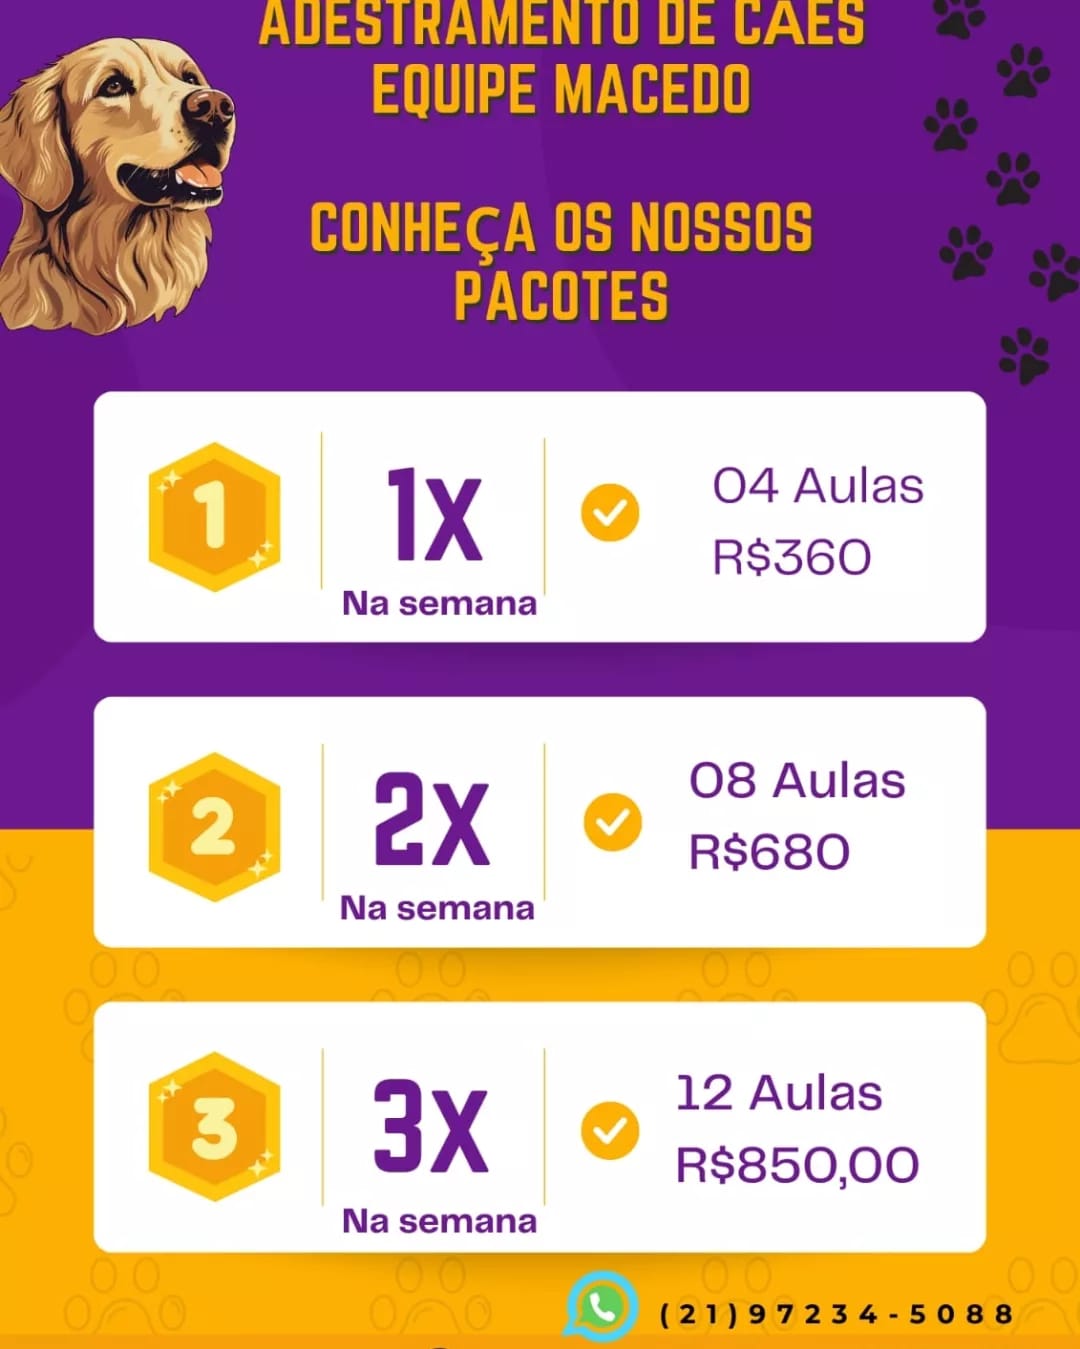 Adestramento de cães Rio de Janeiro e Regiões